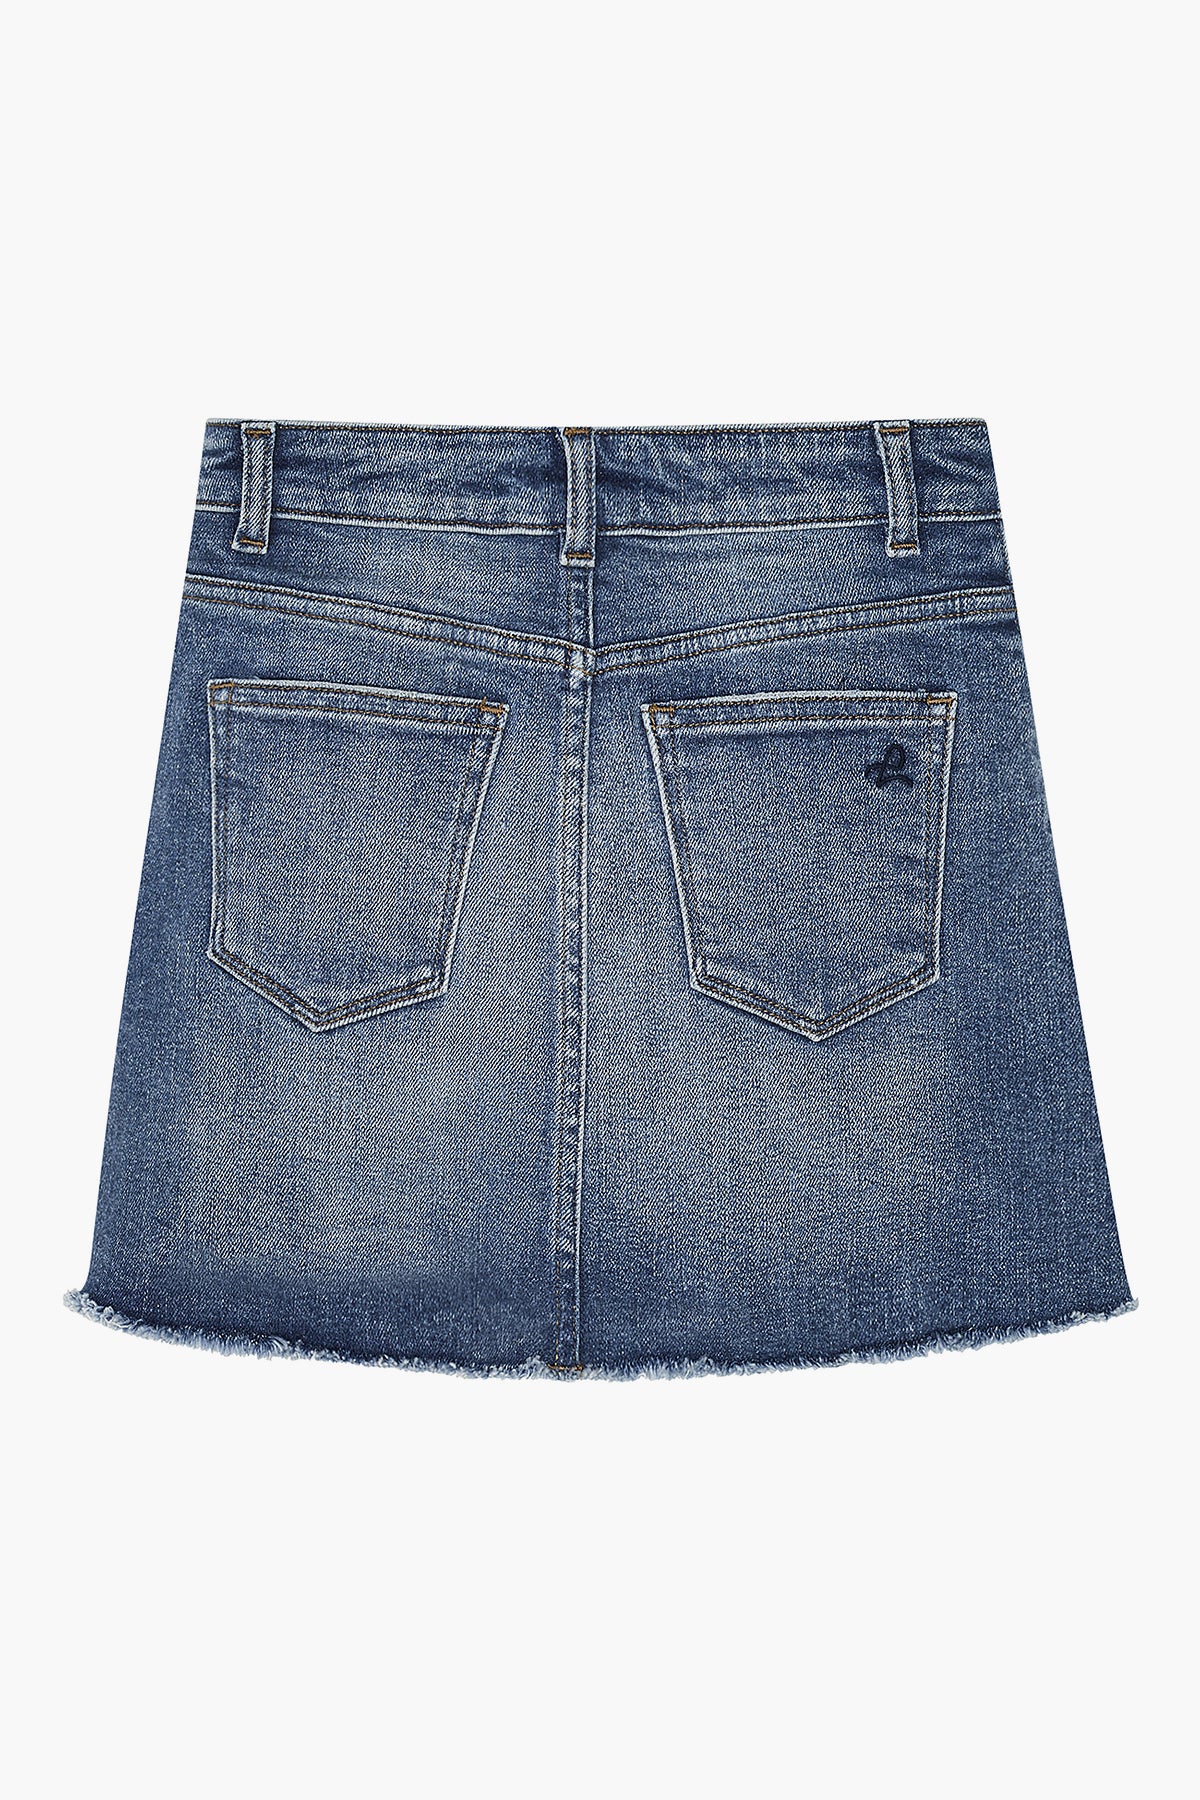 DL1961 Jenny Girls Jean Skirt - Blue Rose (Size 10 left) – Mini Ruby